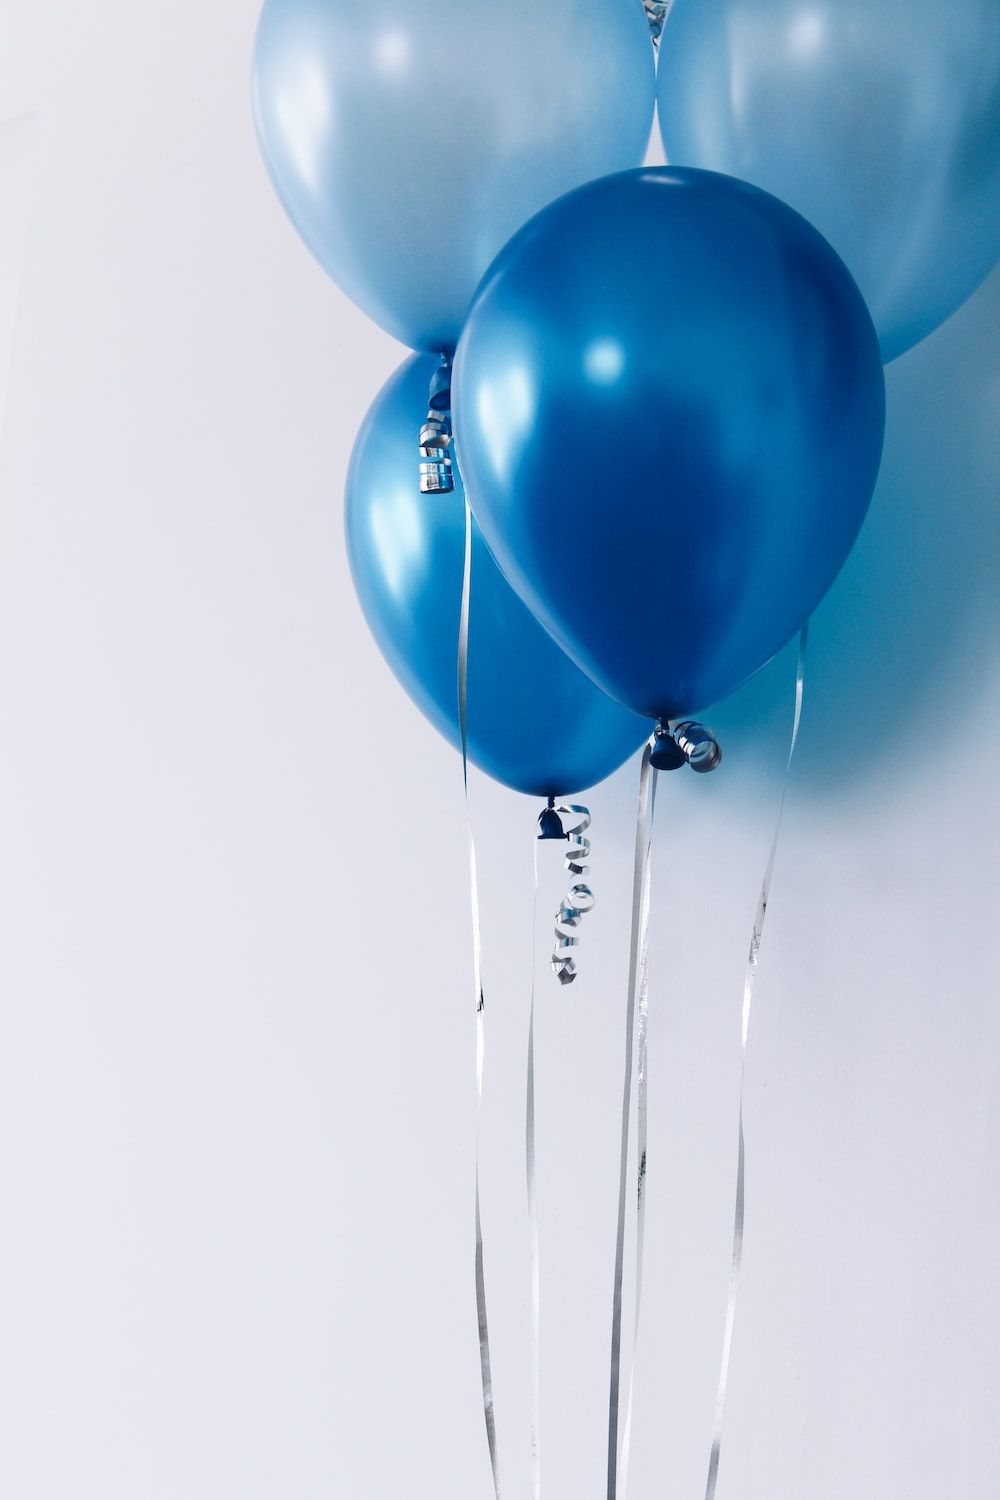  Luftballons Hintergrundbild 1000x1500. Bilder zum Thema Blaue Luftballons. Kostenlose Bilder auf herunterladen